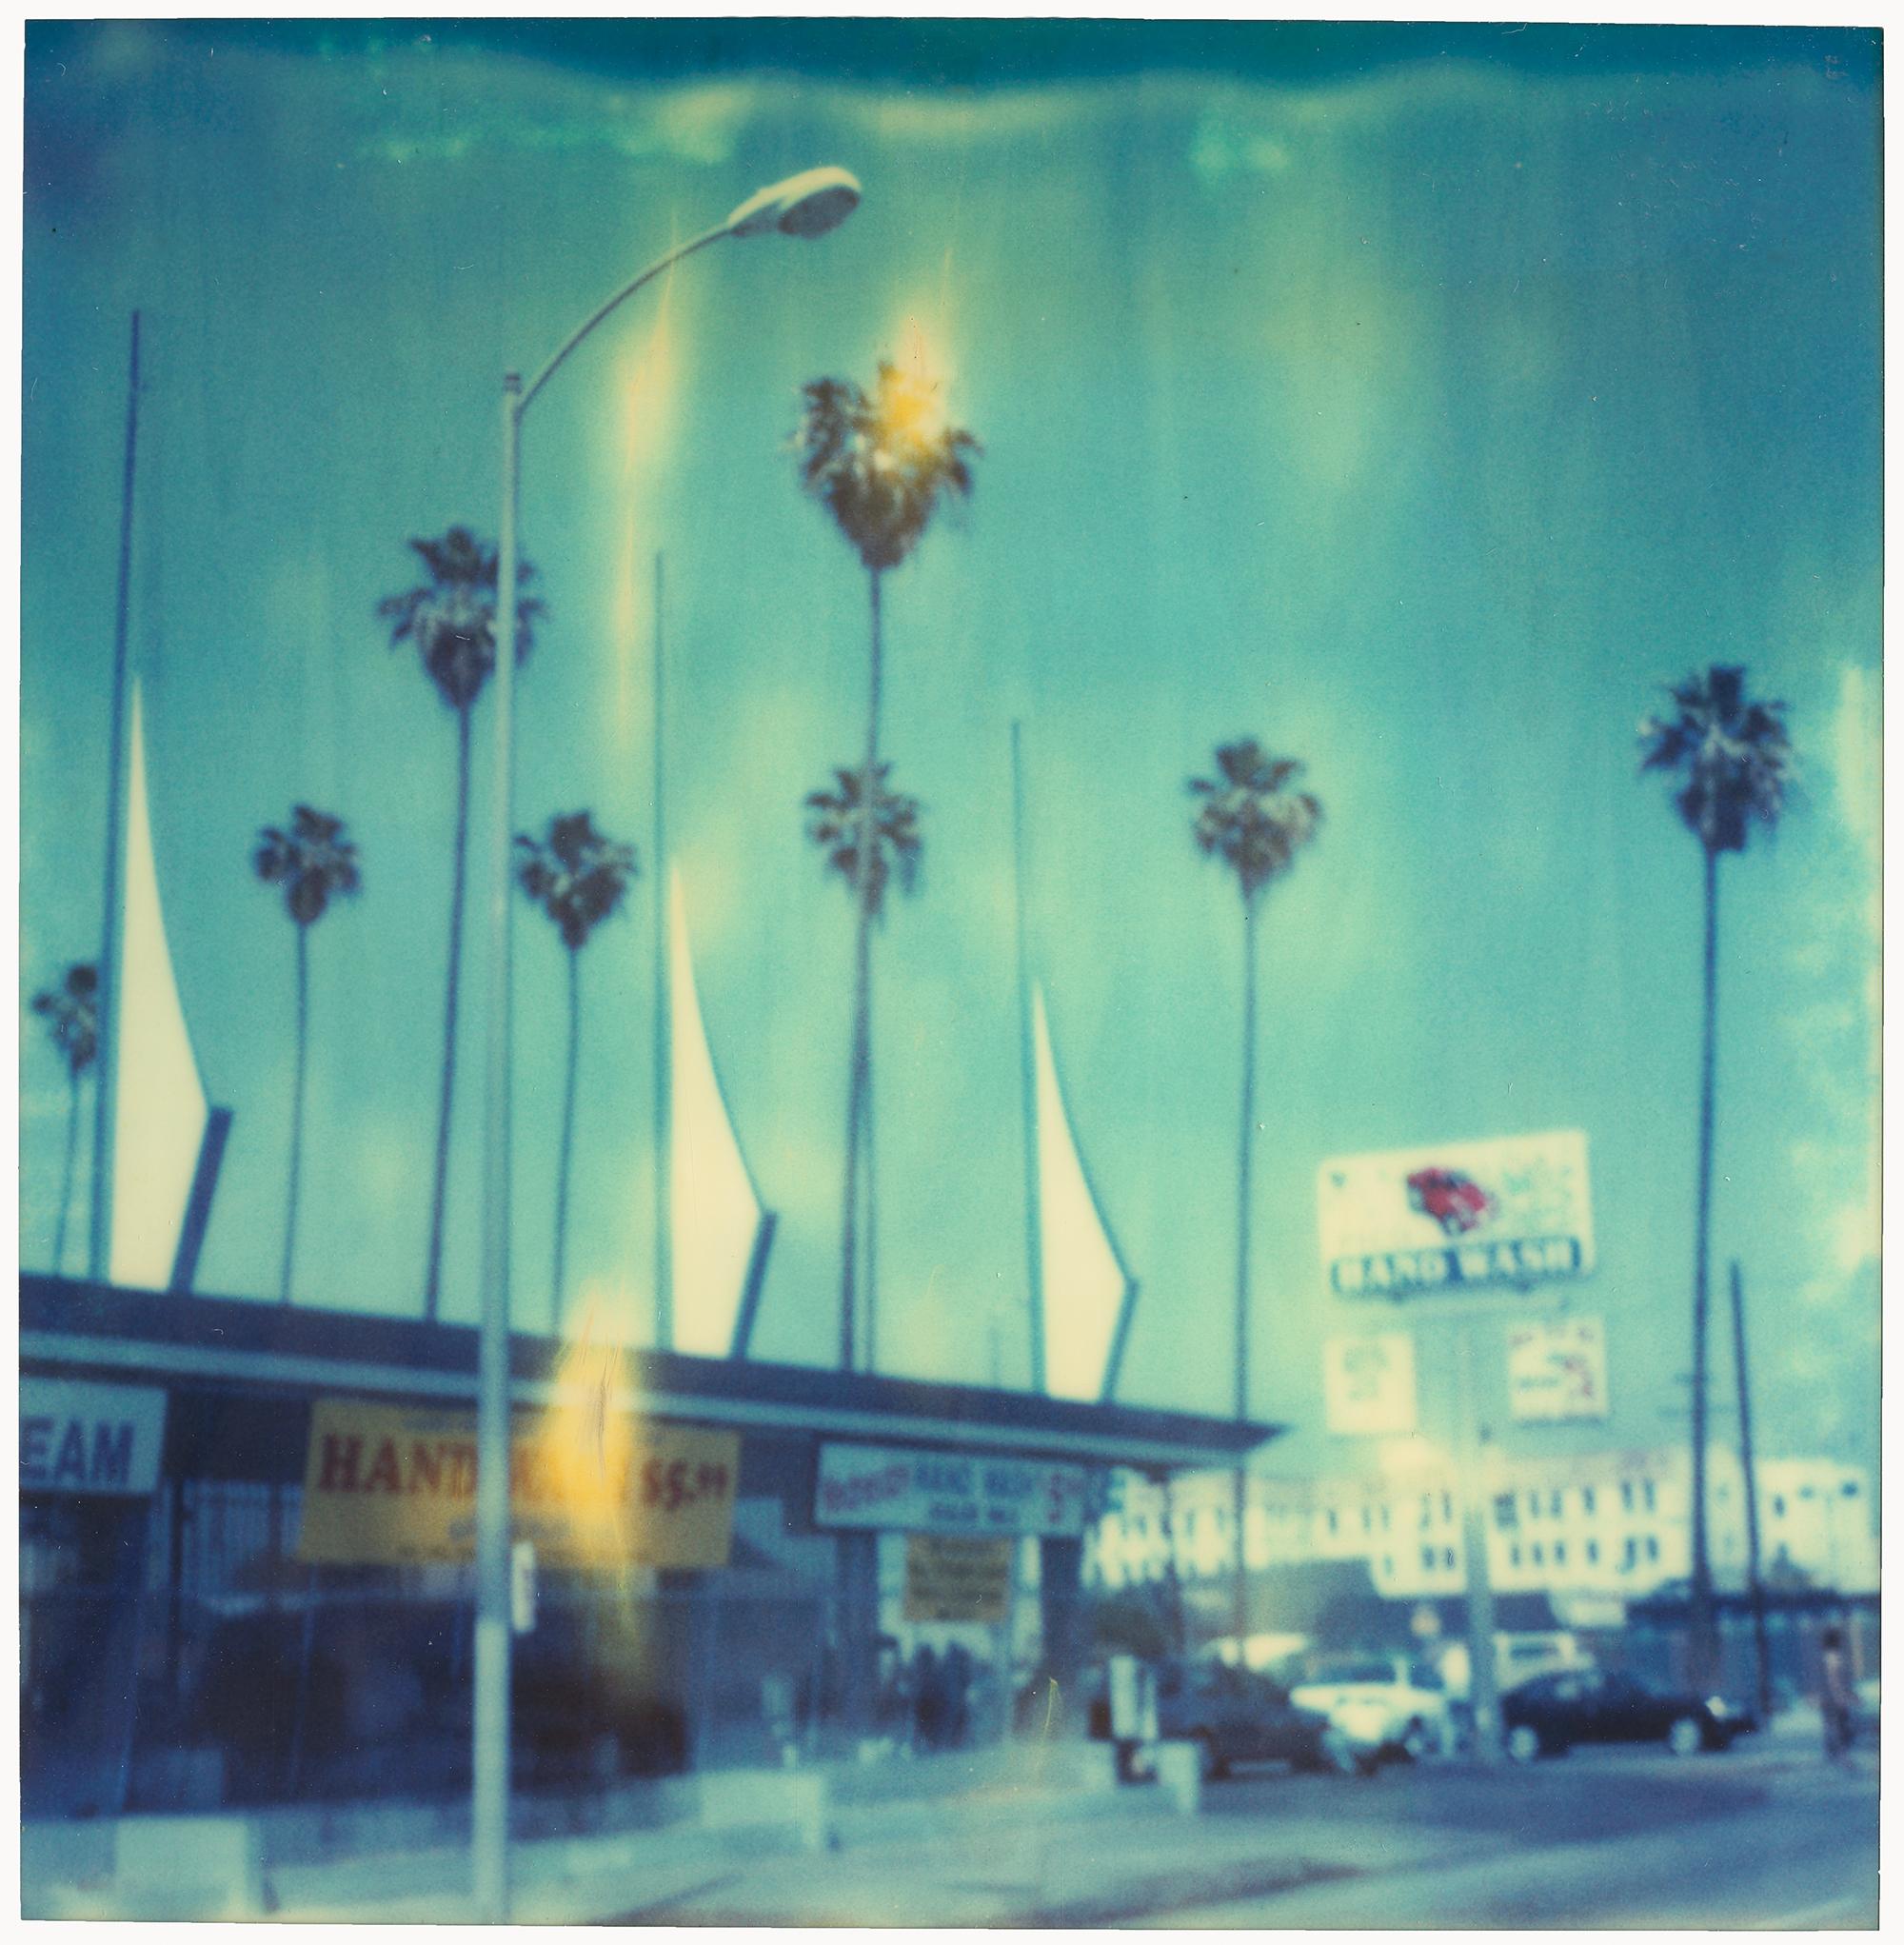 Car Wash - Contemporary, Landschaft, Stadtbild, abgelaufen, Polaroid, analog, Blau – Photograph von Stefanie Schneider